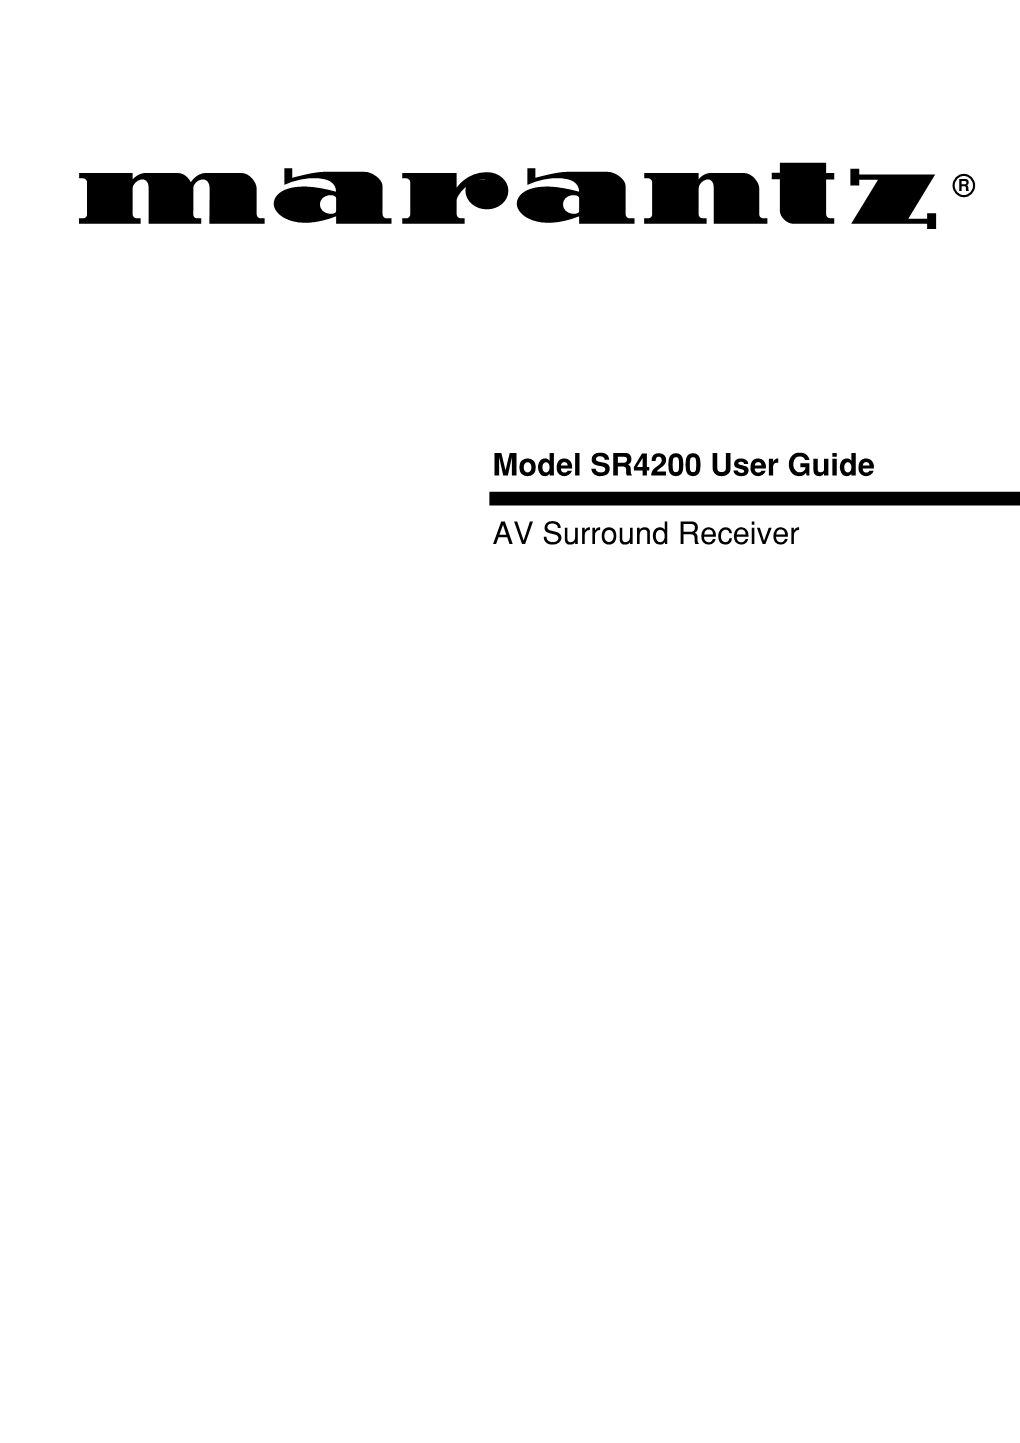 Model SR4200 User Guide AV Surround Receiver